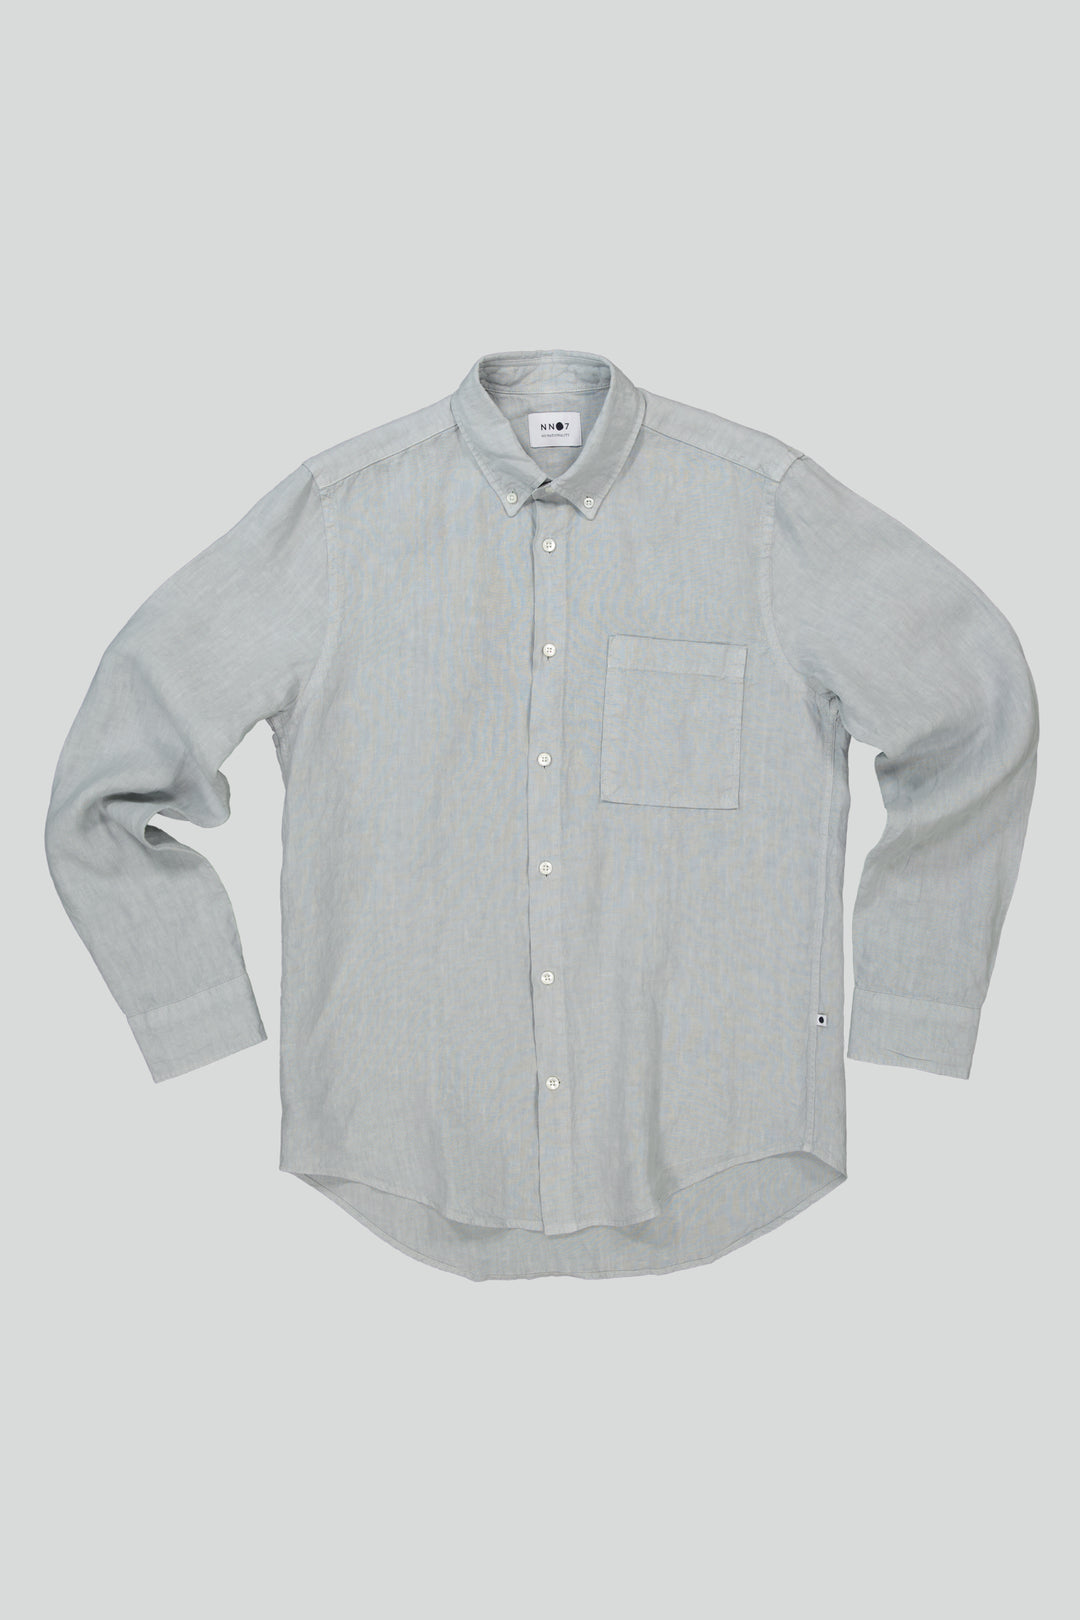 NN07 - Arne BD 5706 Linen Shirt in Harbor Mist | Buster McGee